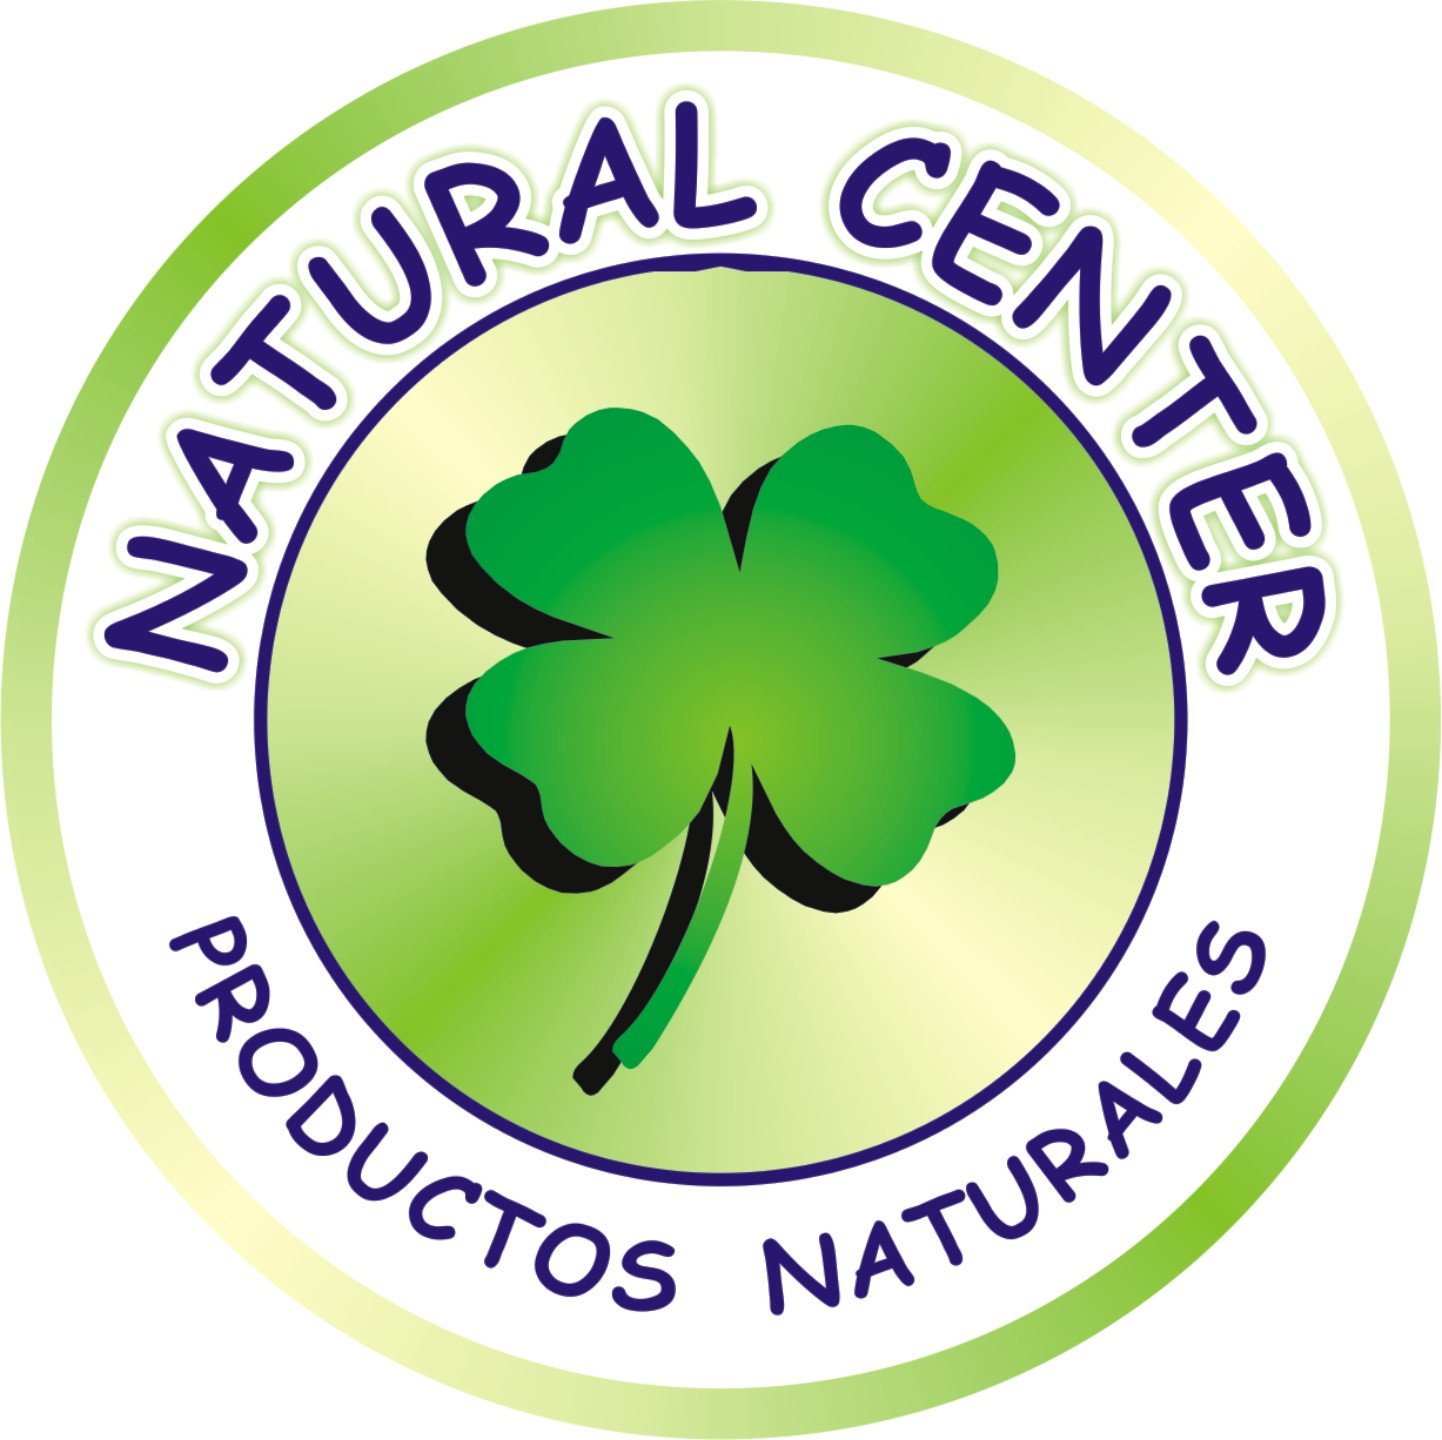 Natural Center Productos Naturales